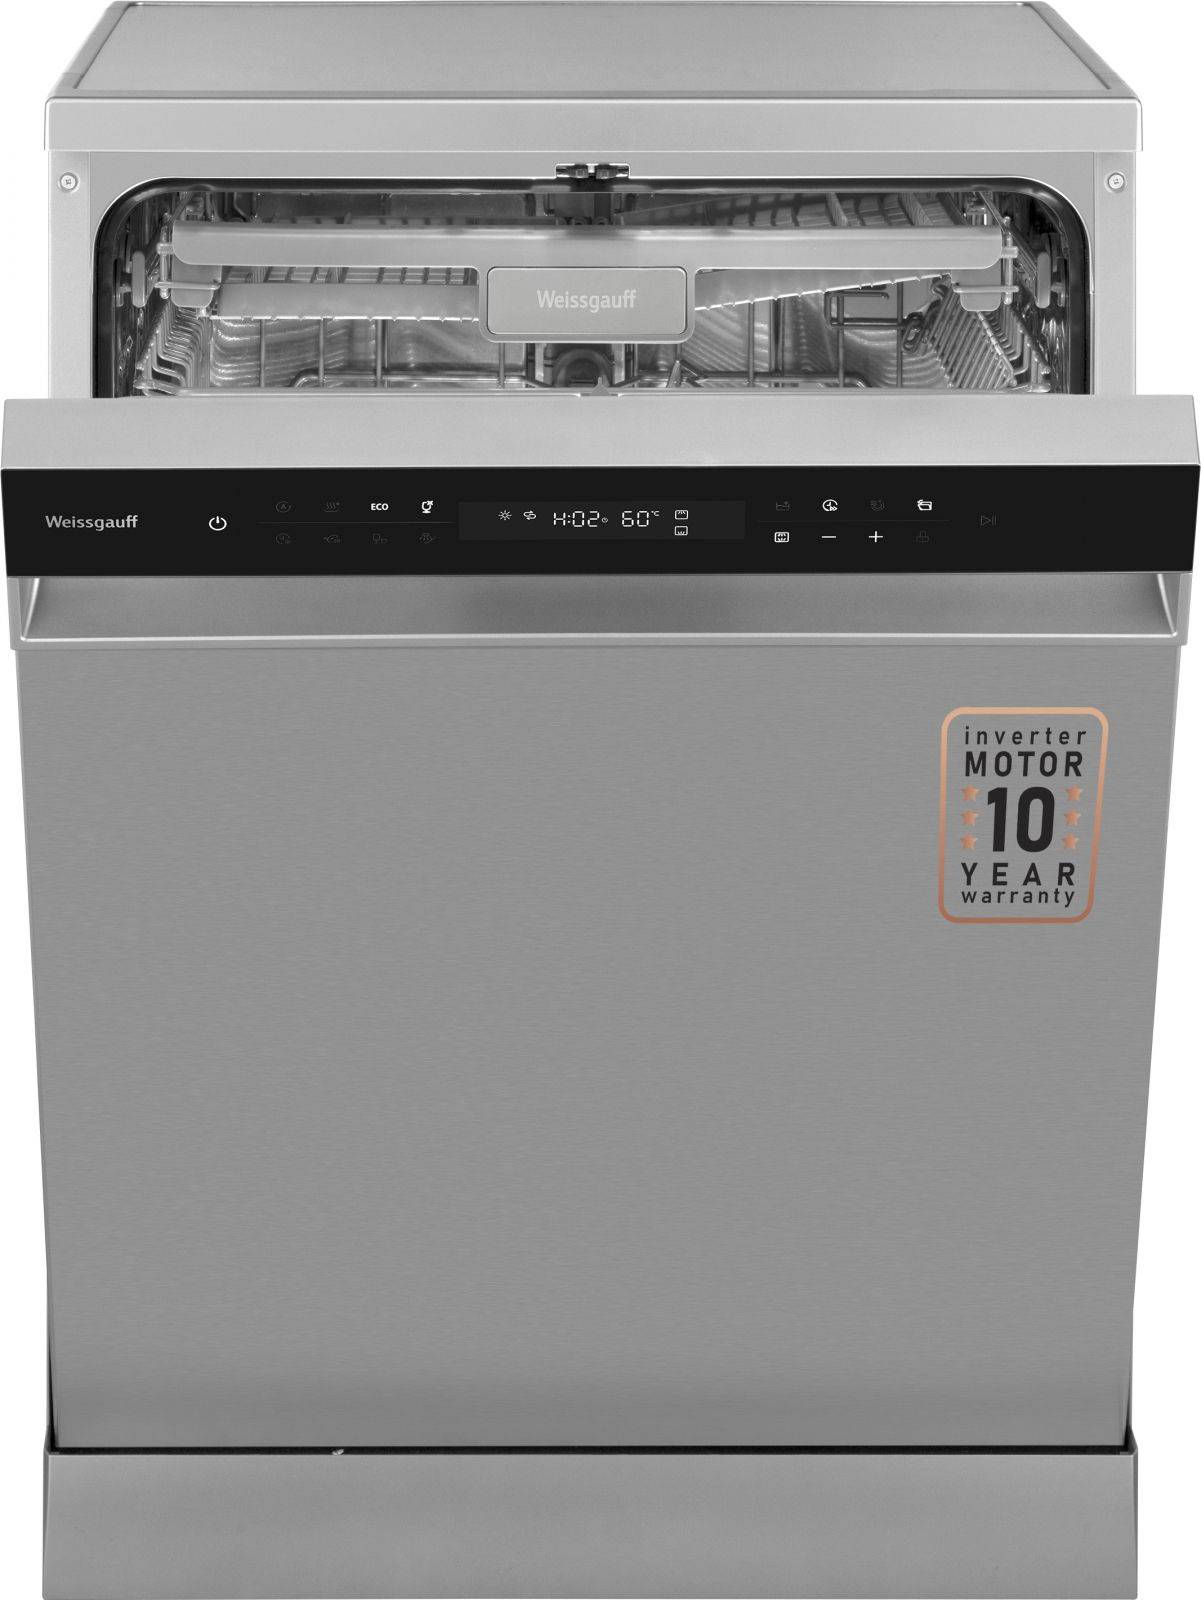 Посудомоечная машина Weissgauff DW 6138 Inverter Touch Inox нержавеющая сталь (429984)